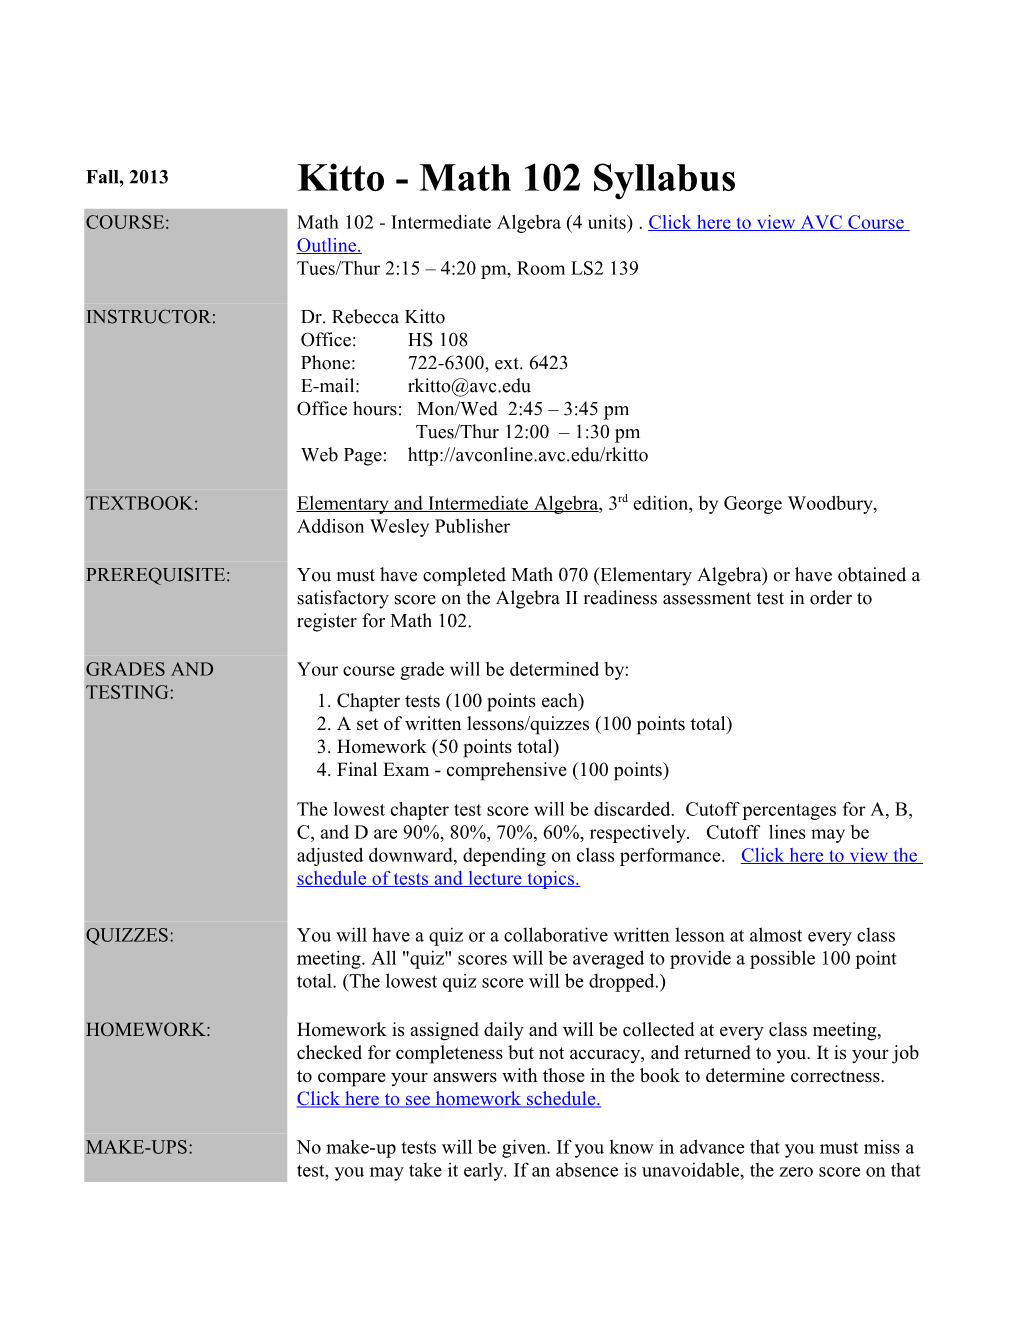 Kitto - Math 102 Syllabus